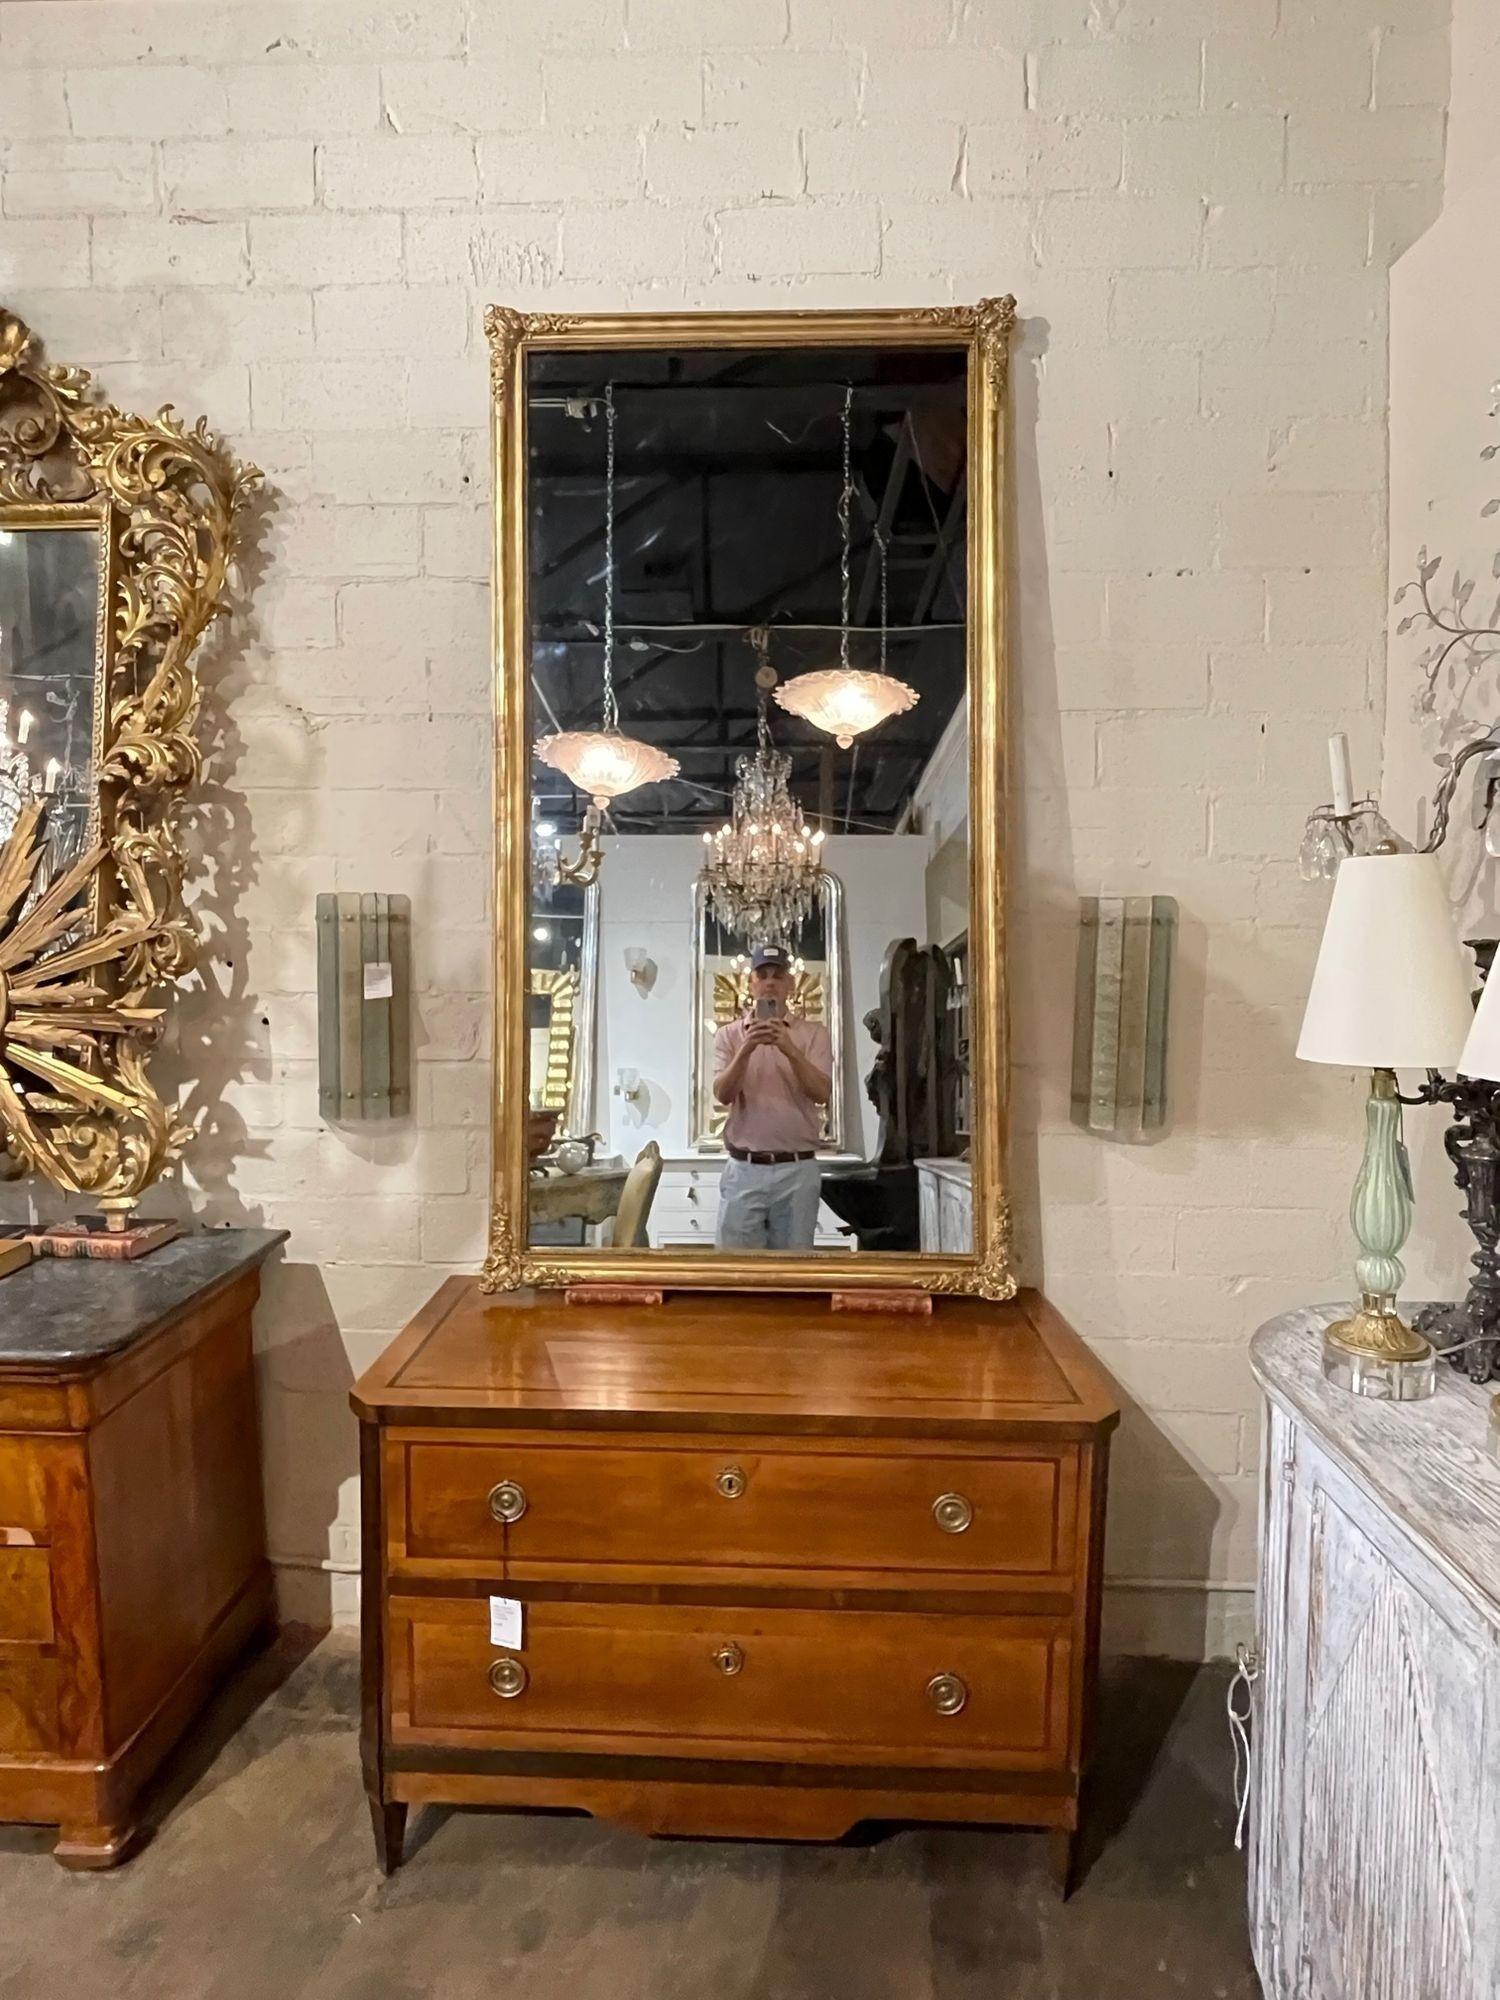 Paire de miroirs en bois doré de style transitionnel de la fin du XIXe siècle. Date d'environ 1890. Ajoutez de la chaleur et du charme à n'importe quelle pièce !